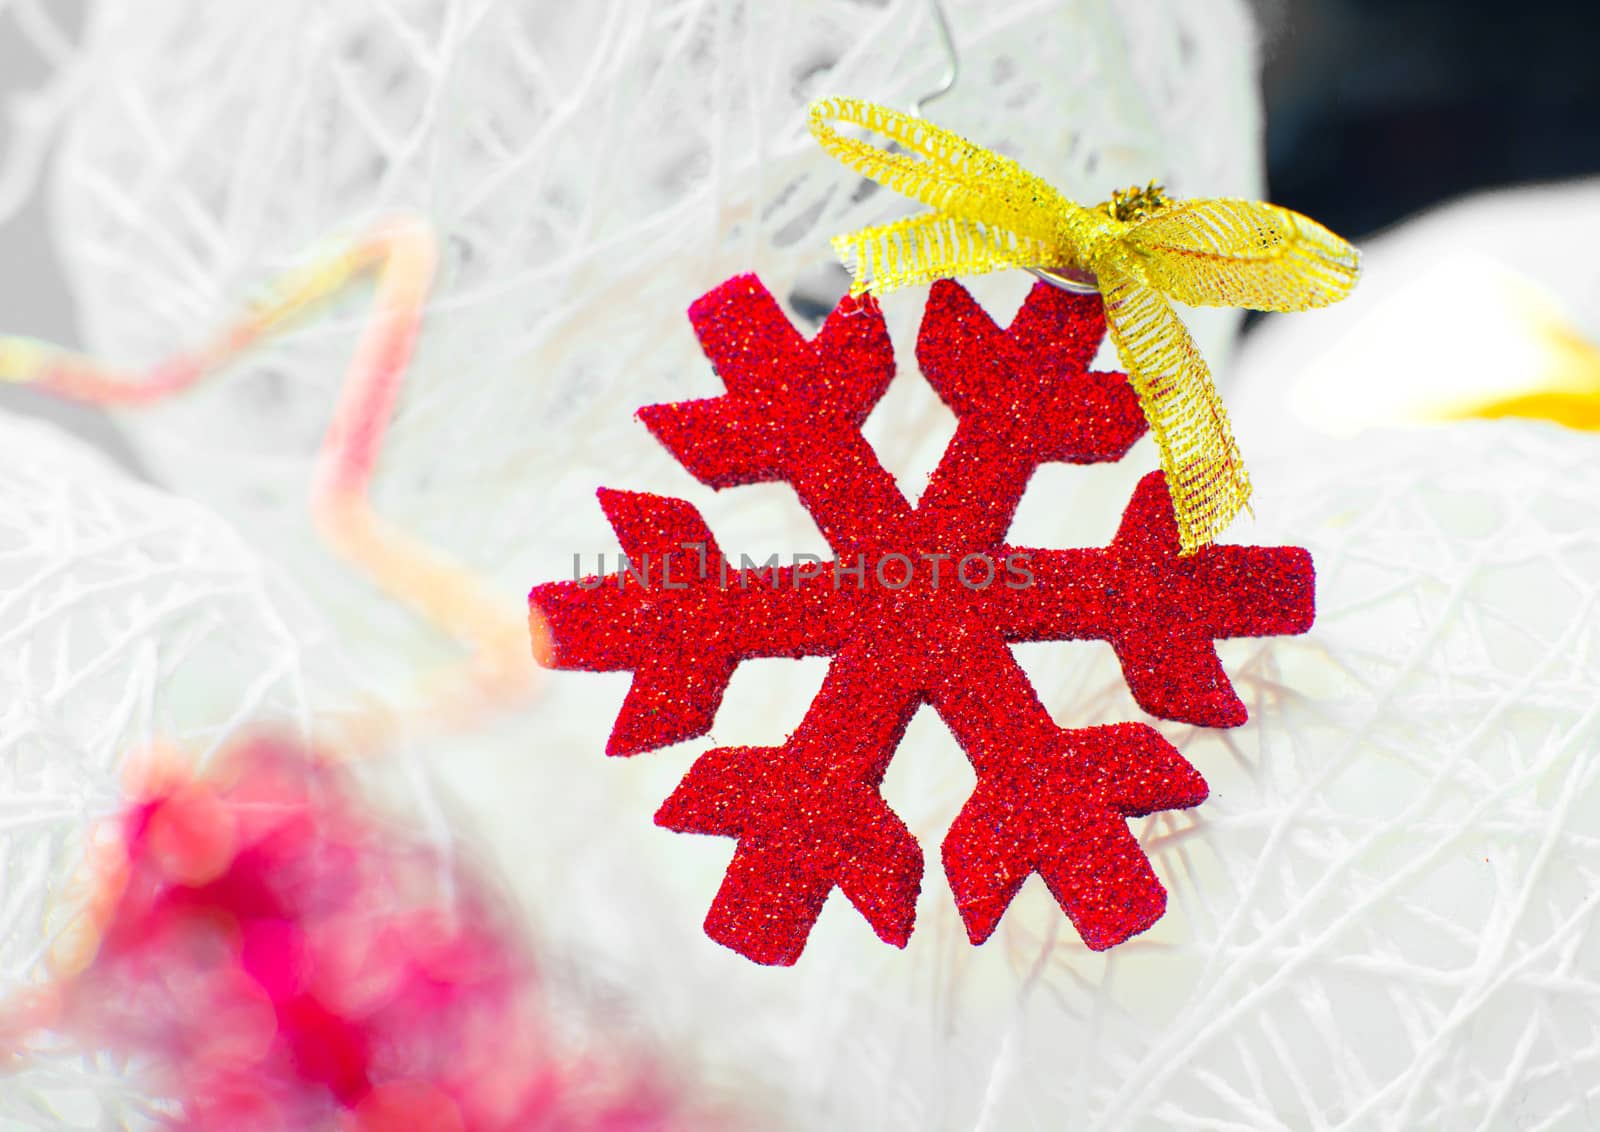 Red snowflake by GekaSkr